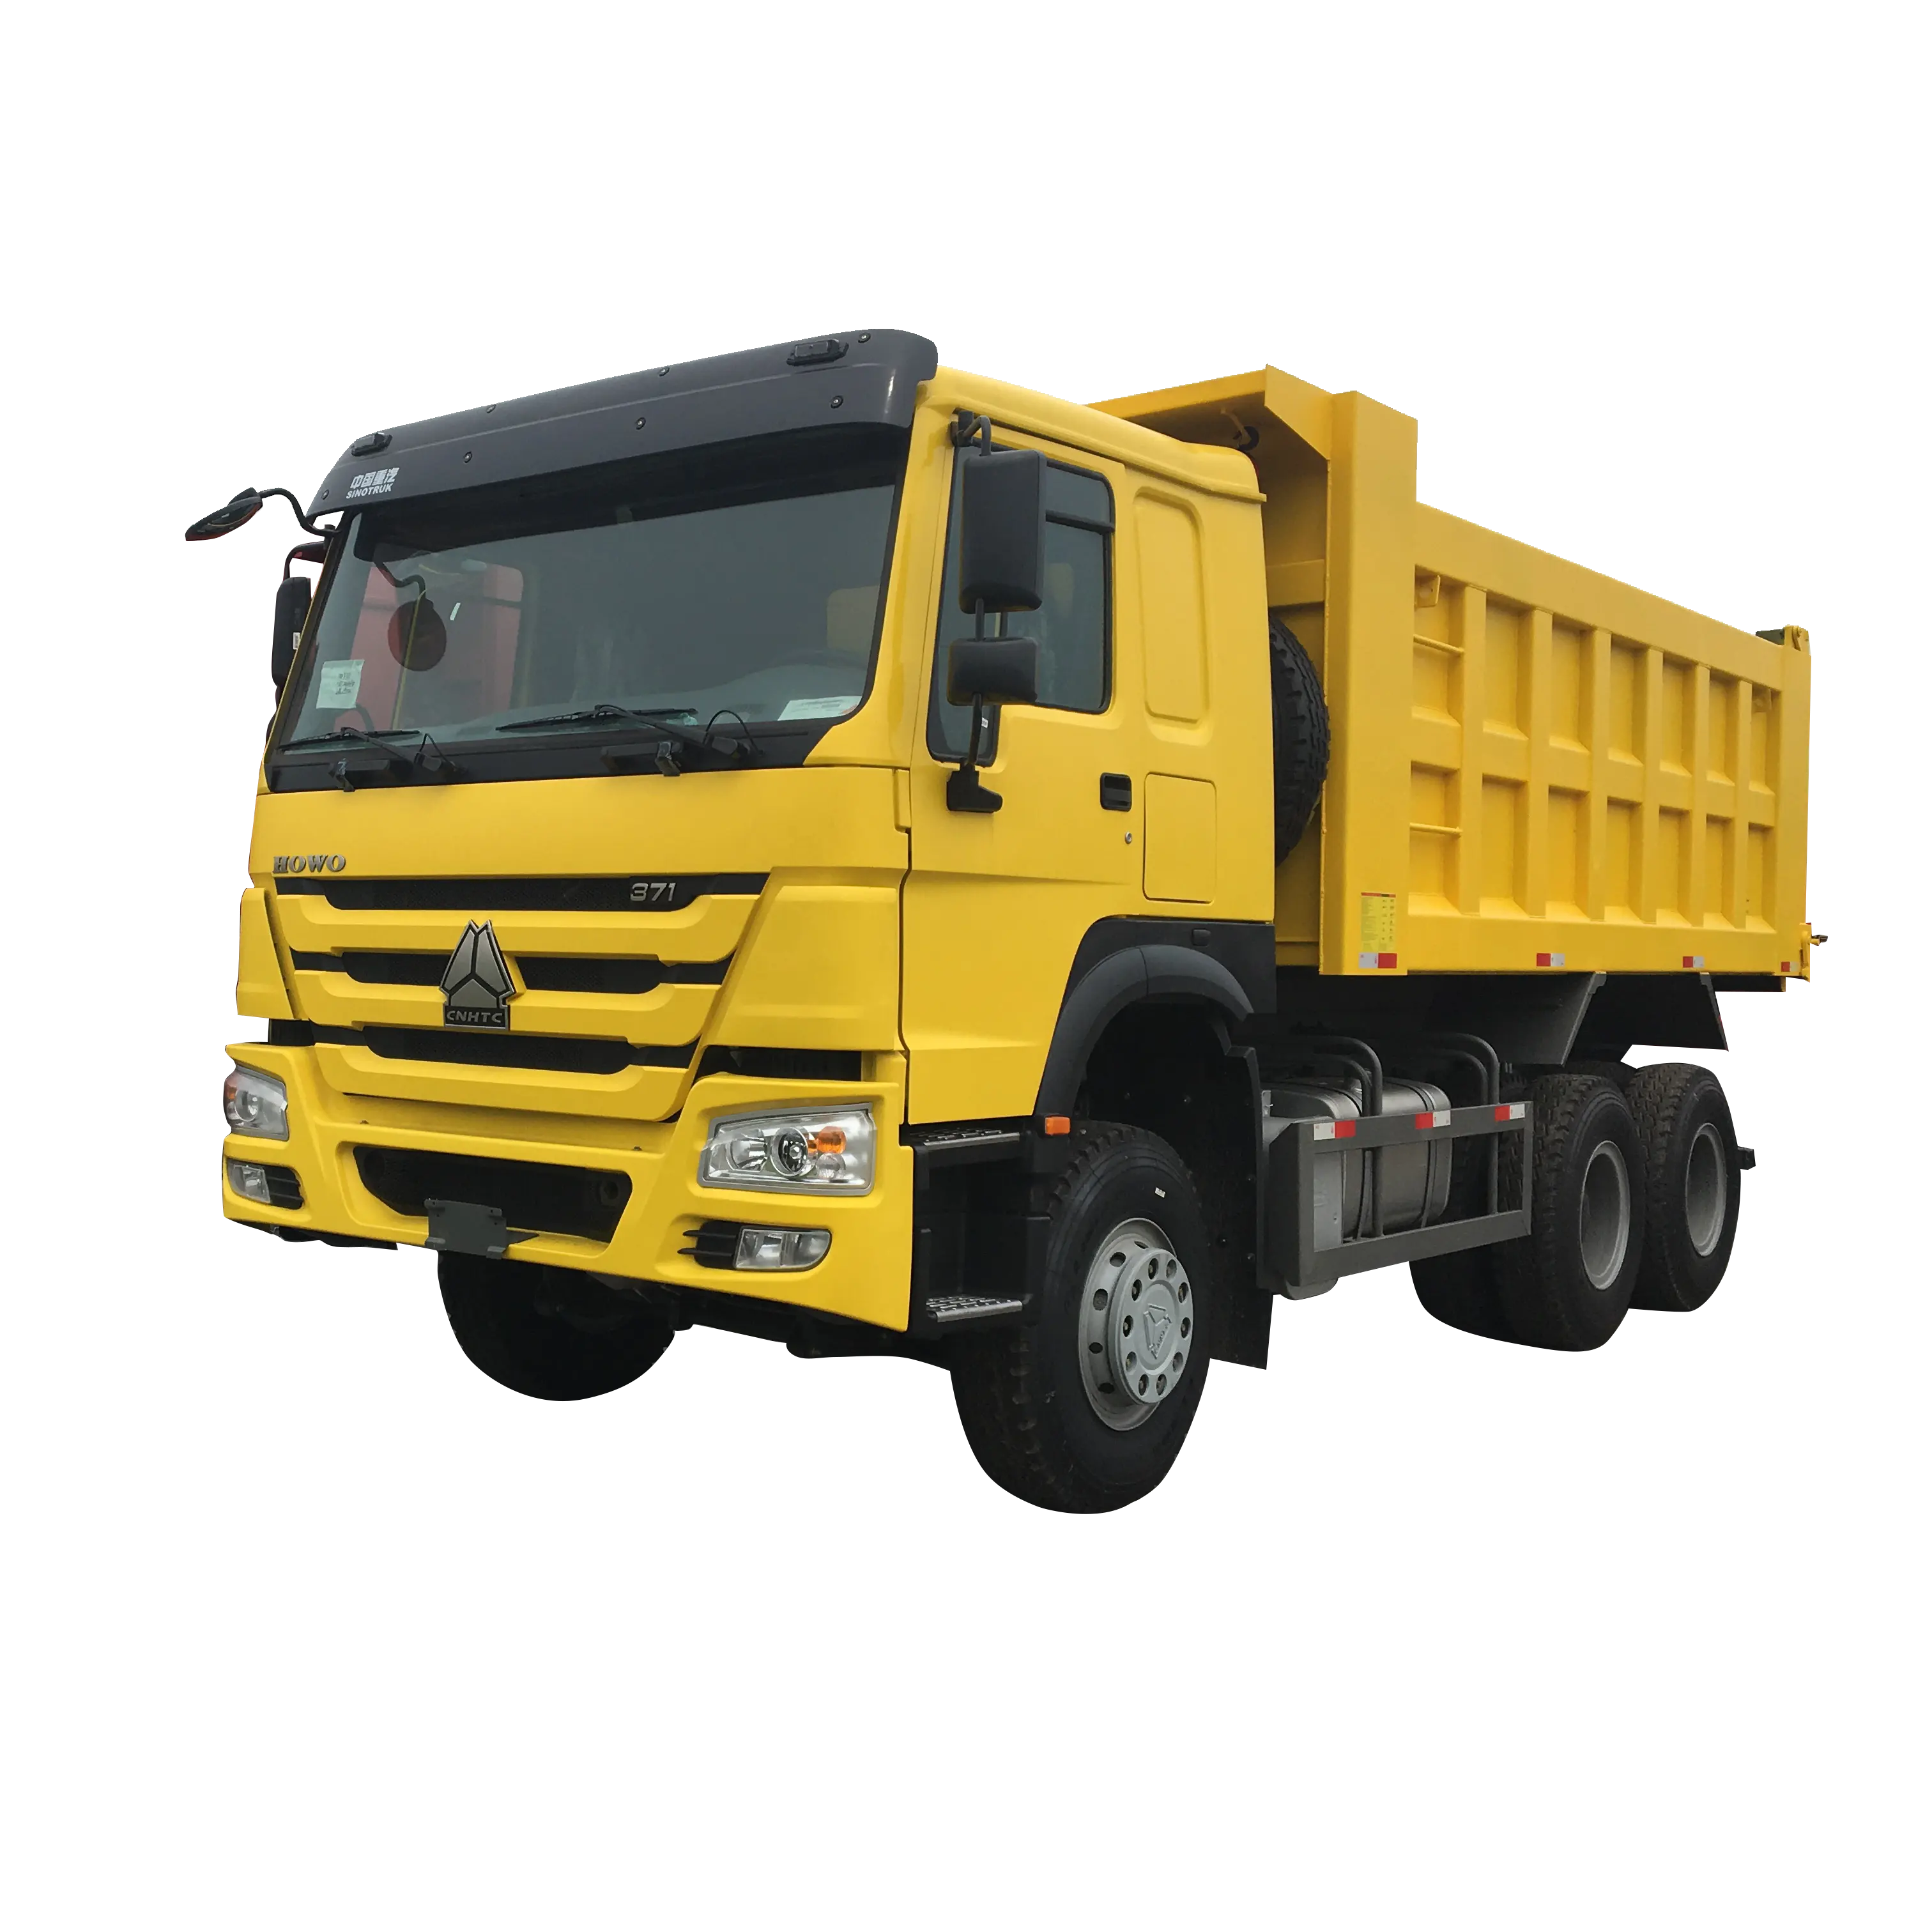 SINOTRUK-Camión de servicio pesado, camión de volquete de 40 toneladas, SINOTRUK, Hoo, 30 toneladas, gran oferta, 2021